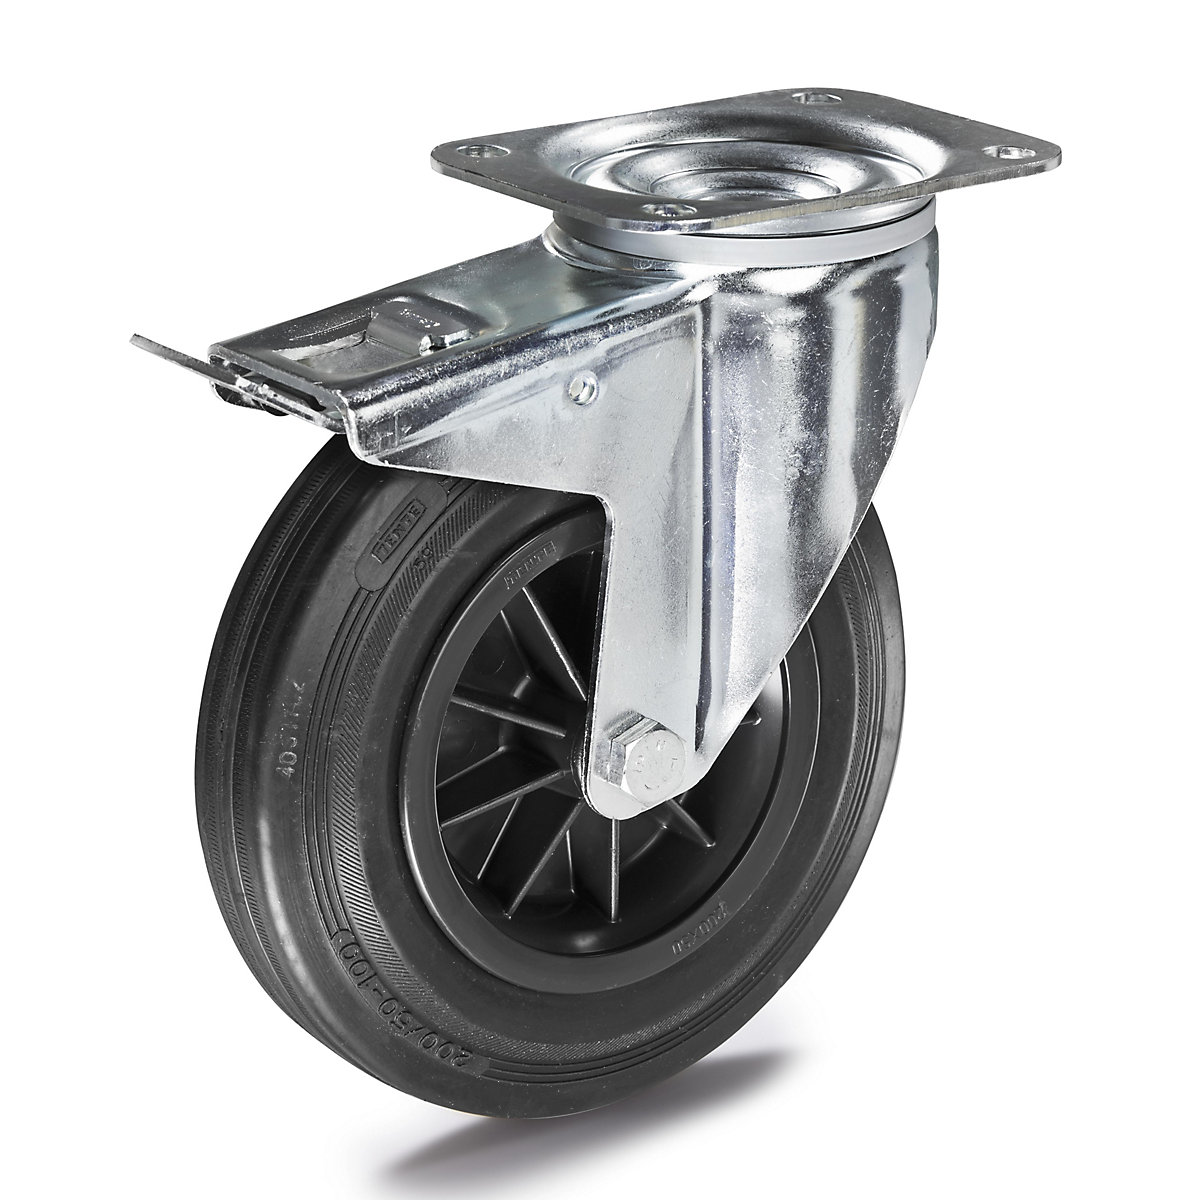 Celogumová obruč na plastovom disku – Proroll, Ø x šírka kolesa 125 x 38 mm, otočné koliesko s dvojitou brzdou-4